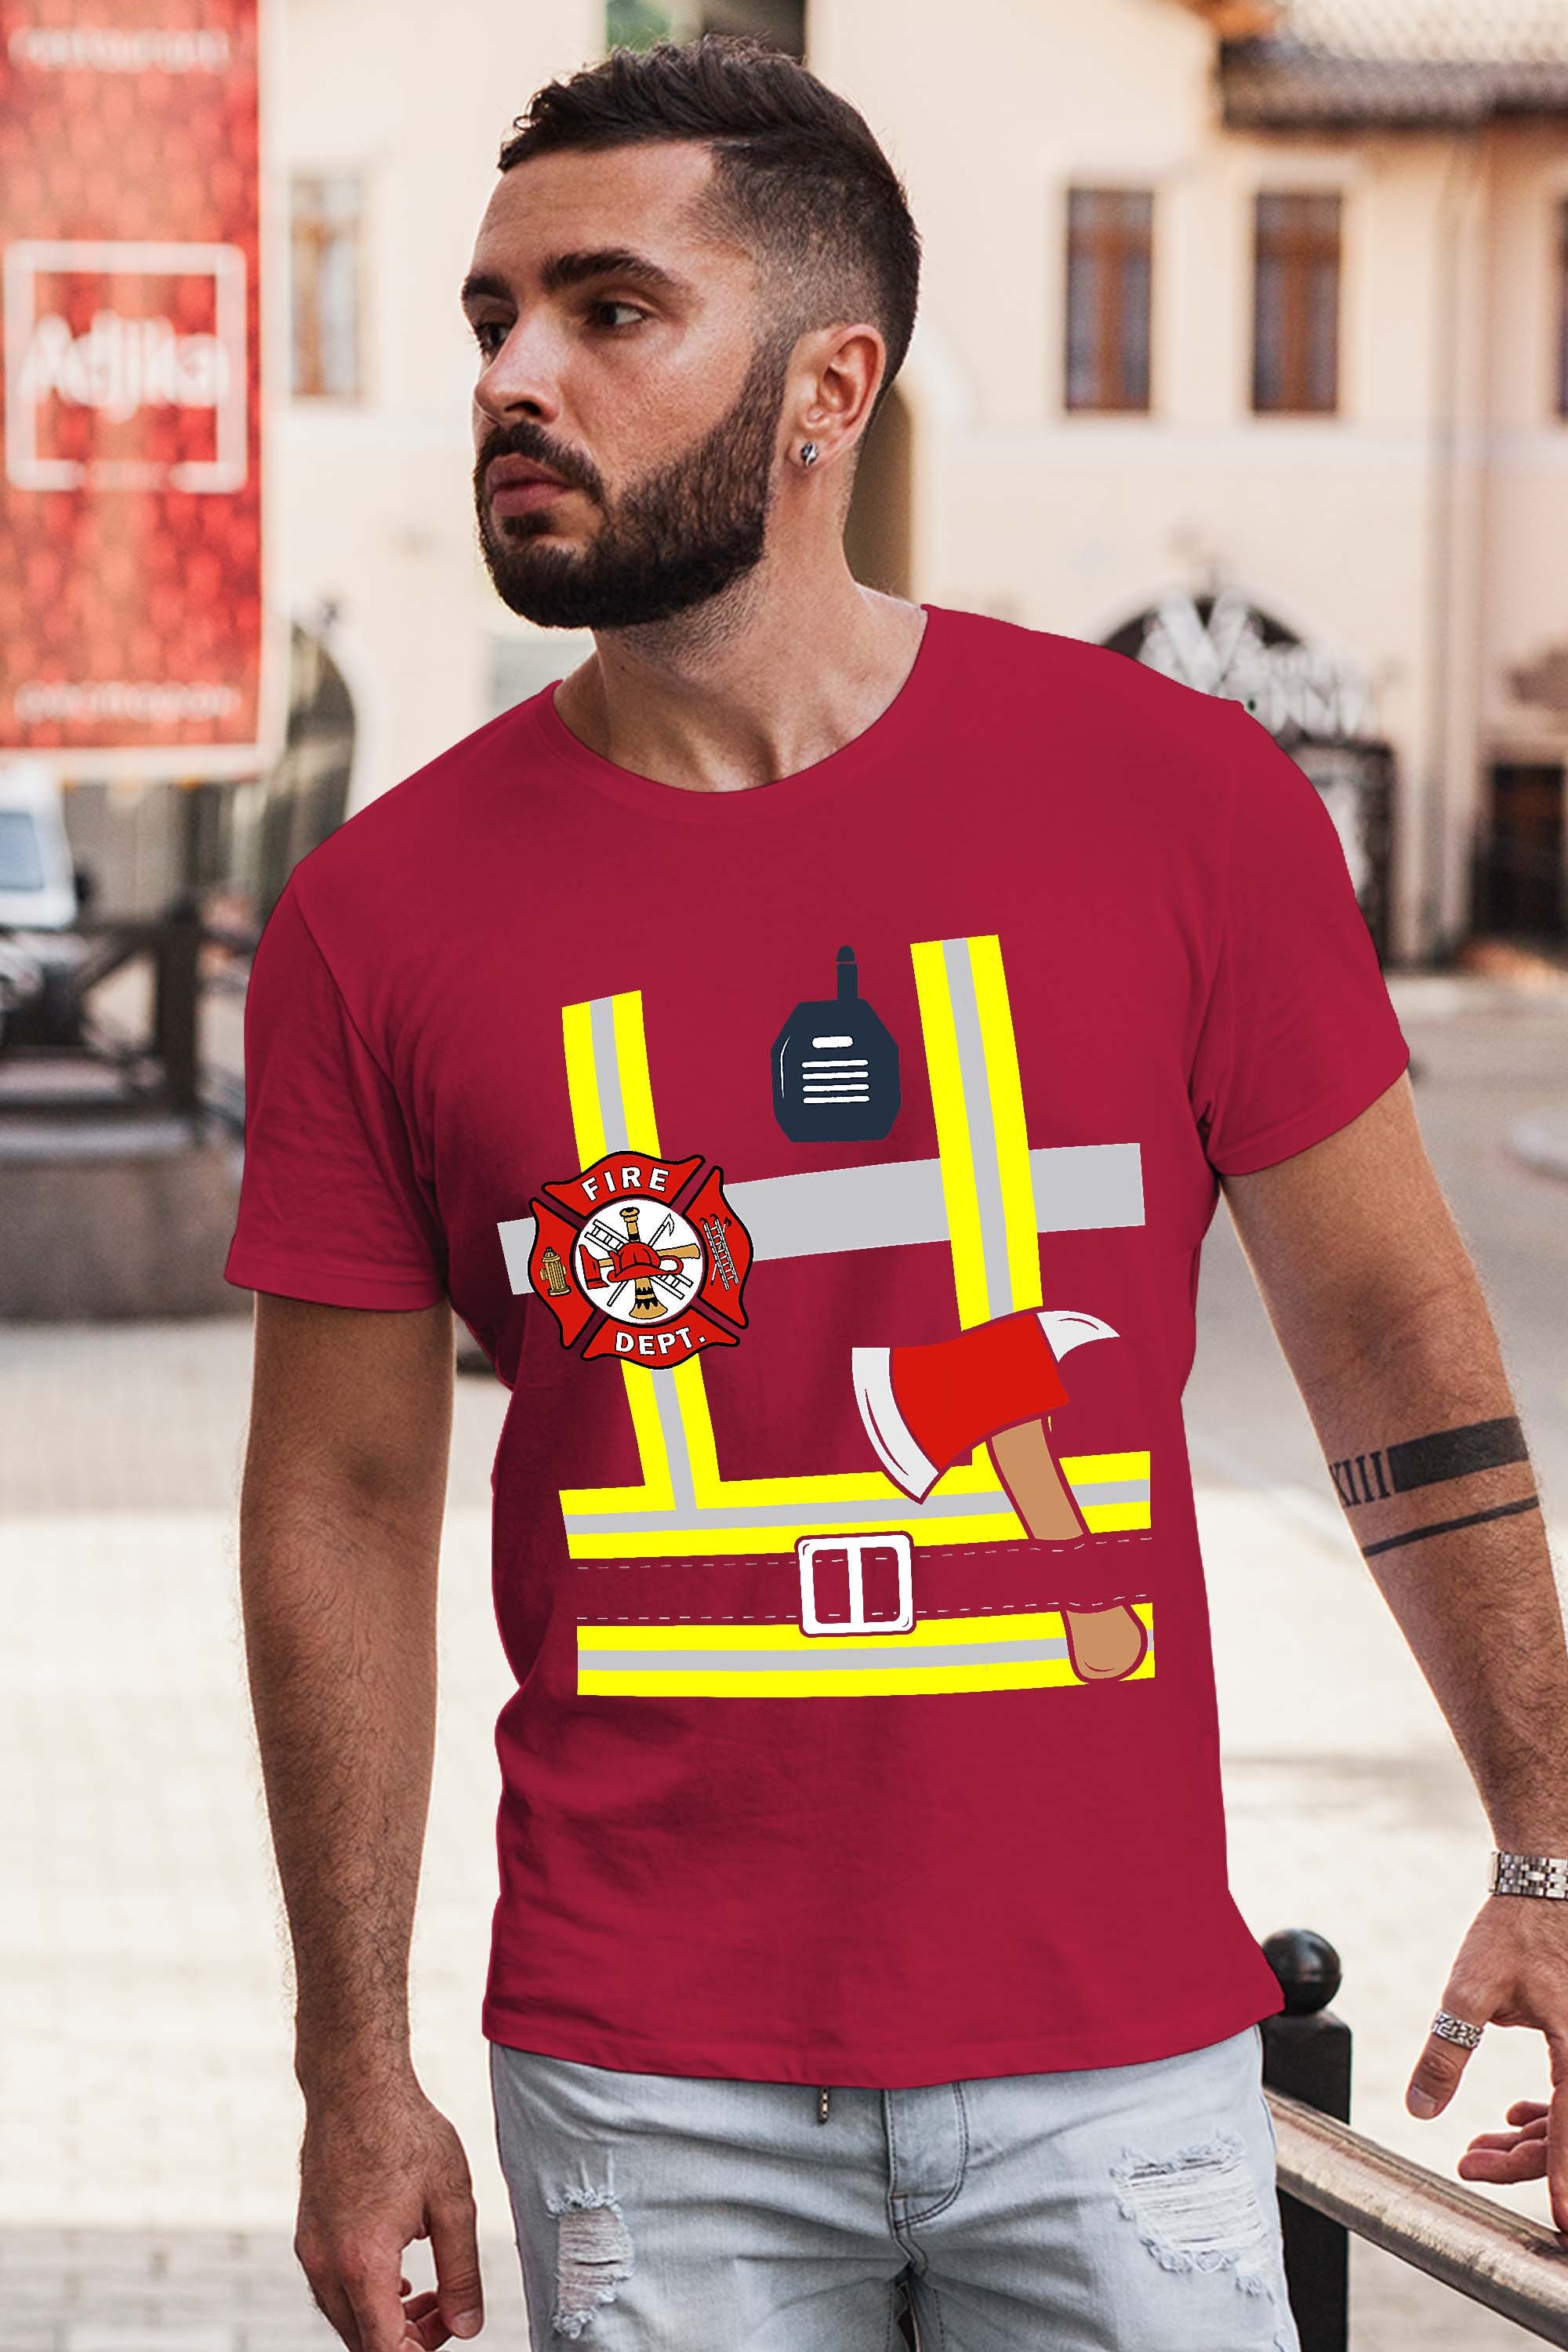 Firefighter Funny Fireman Gear Quick Halloween Costume T-Shirt